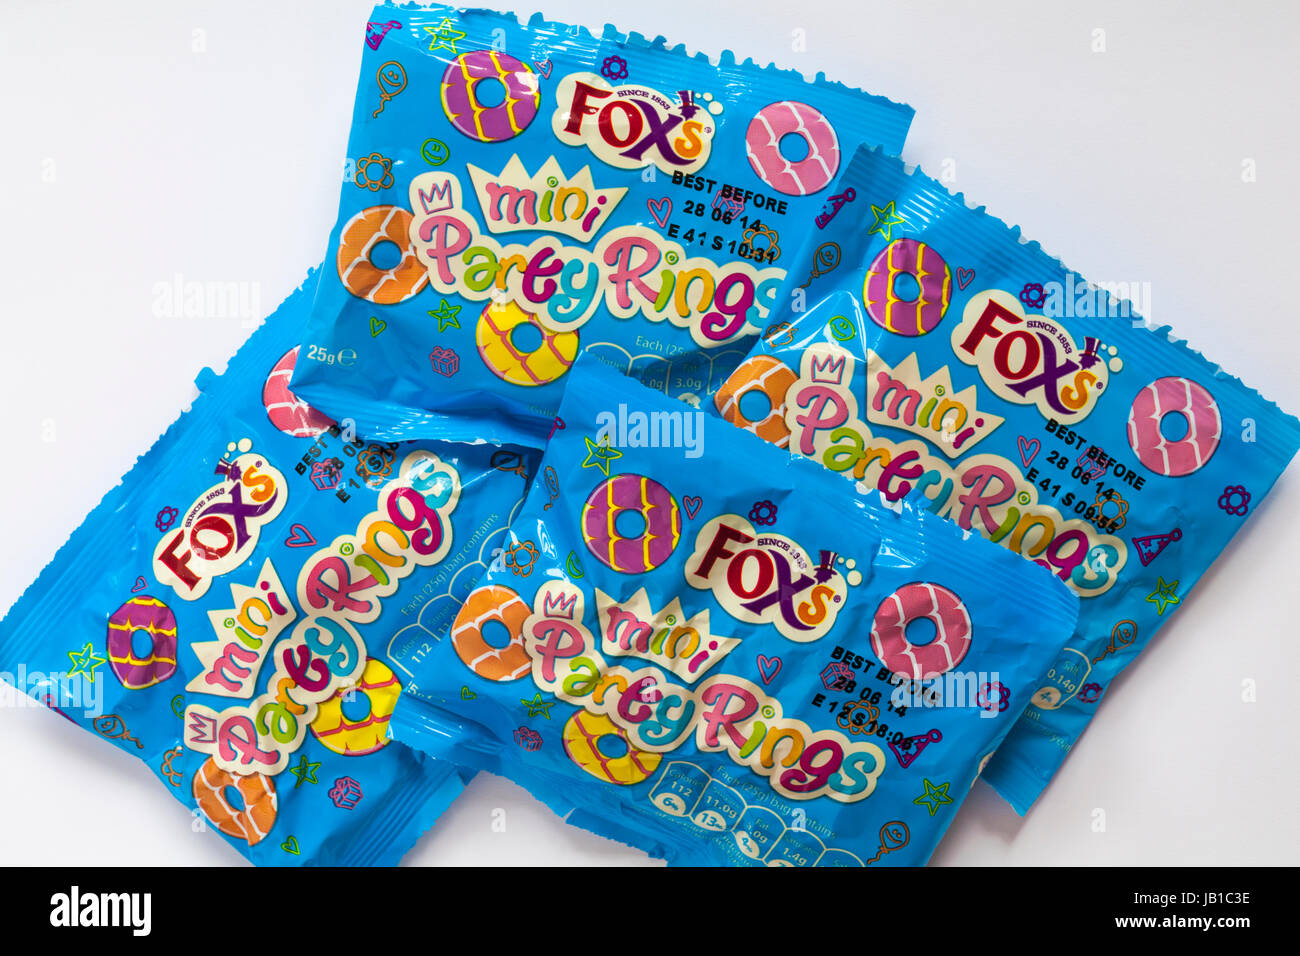 Paquets de Fox's party mini biscuits anneaux fixés sur fond blanc Banque D'Images